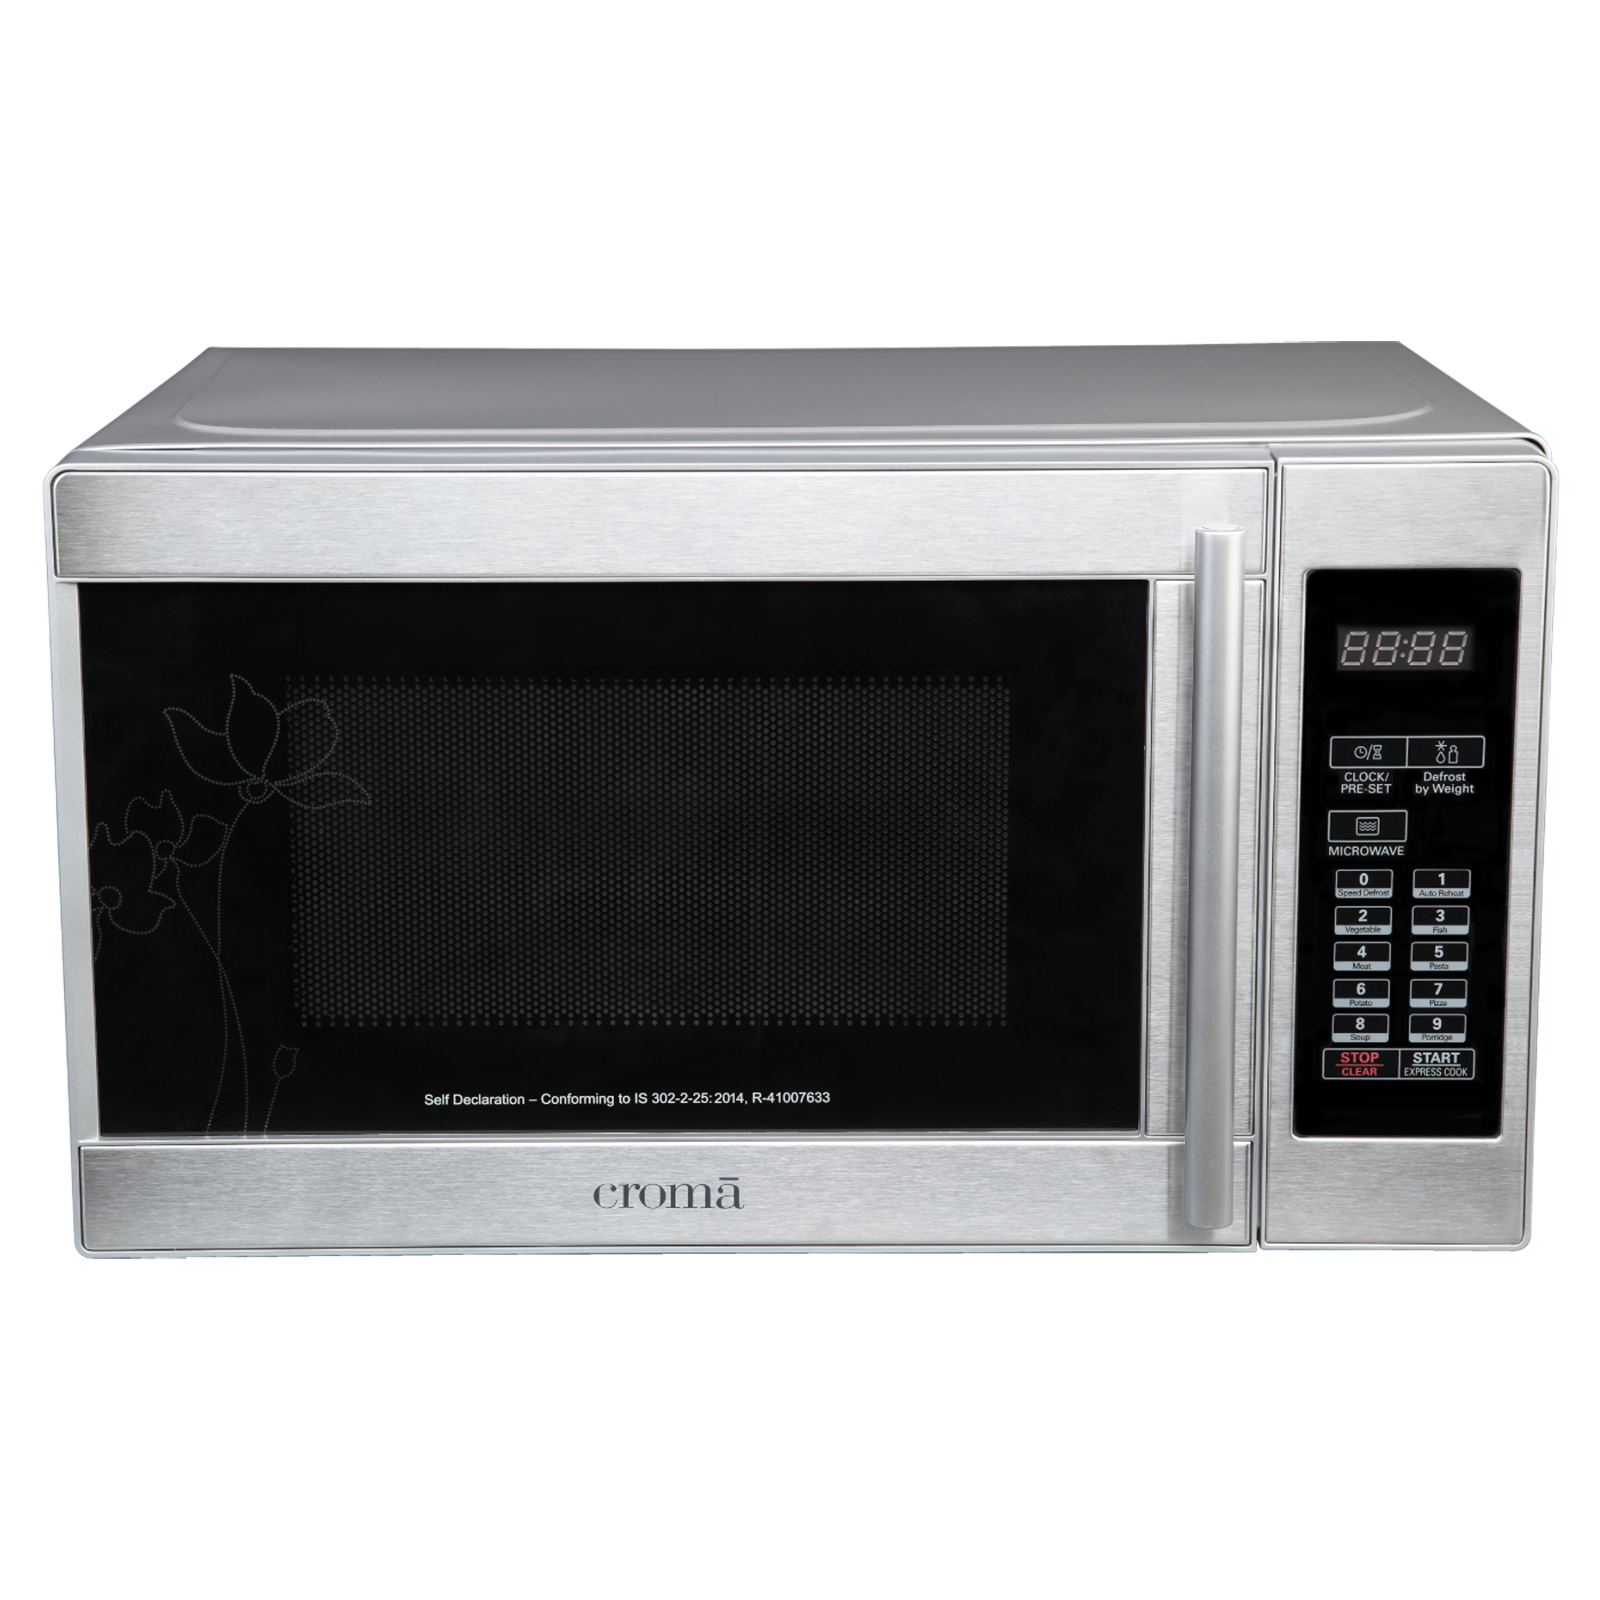 Croma 20 Litres Solo Microwave Oven (Temperature Sensor, CRM2025, Silver)_1